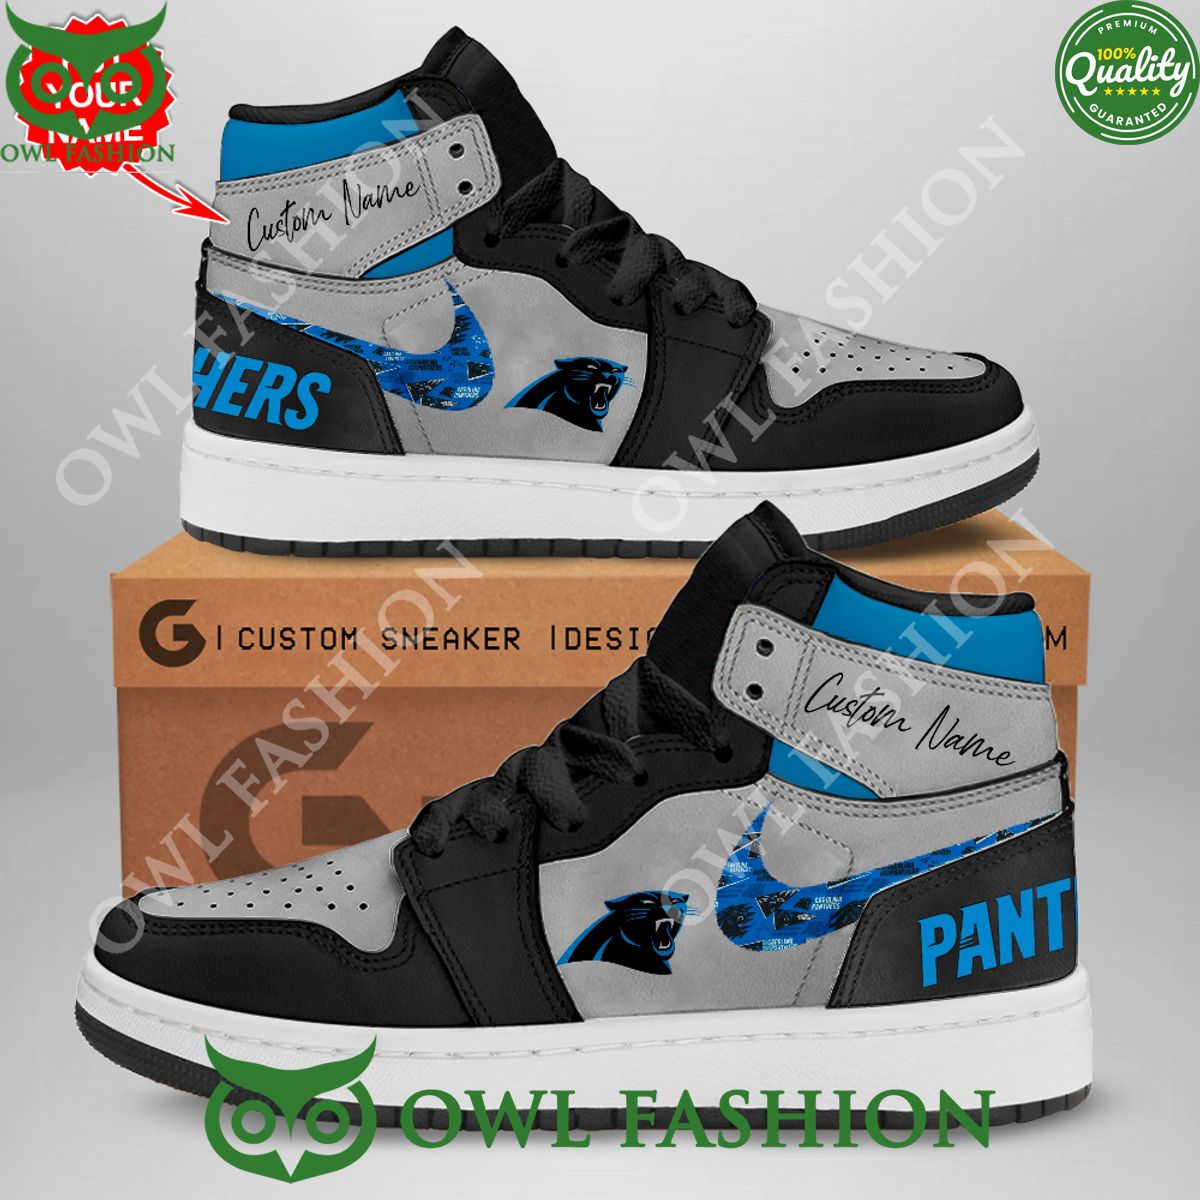 Carolina Panthers NFL Personalized Air Jordan Sneakers